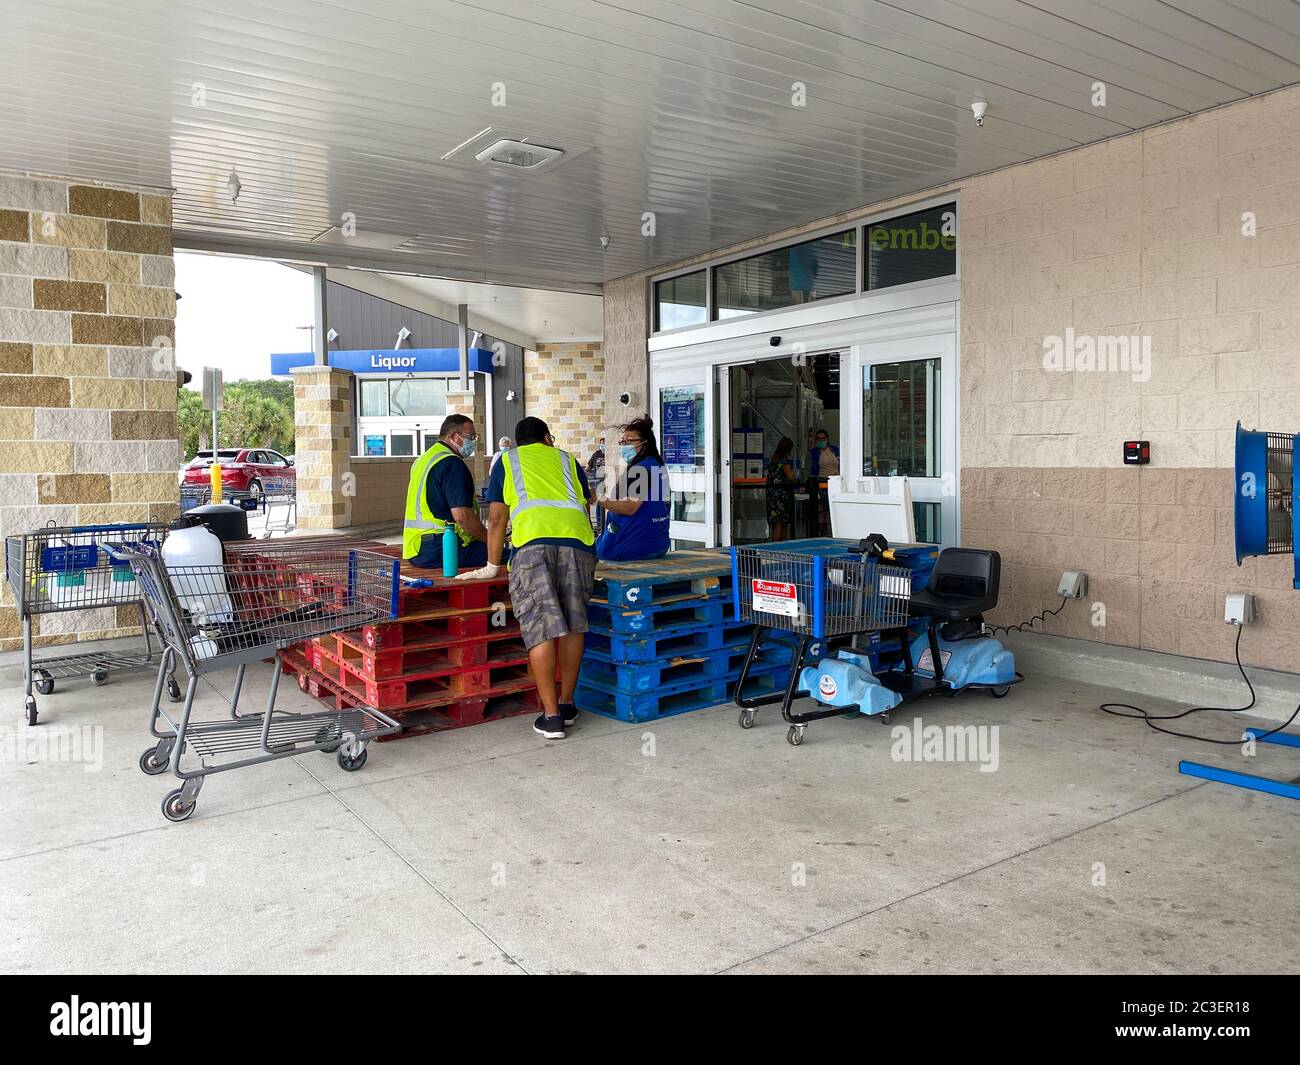 Orlando, FL/USA-5/29/20: La entrada al Sams Club donde se desinfectan los  carros y se limita el número de personas que entran en la tienda de  comestibles Fotografía de stock - Alamy